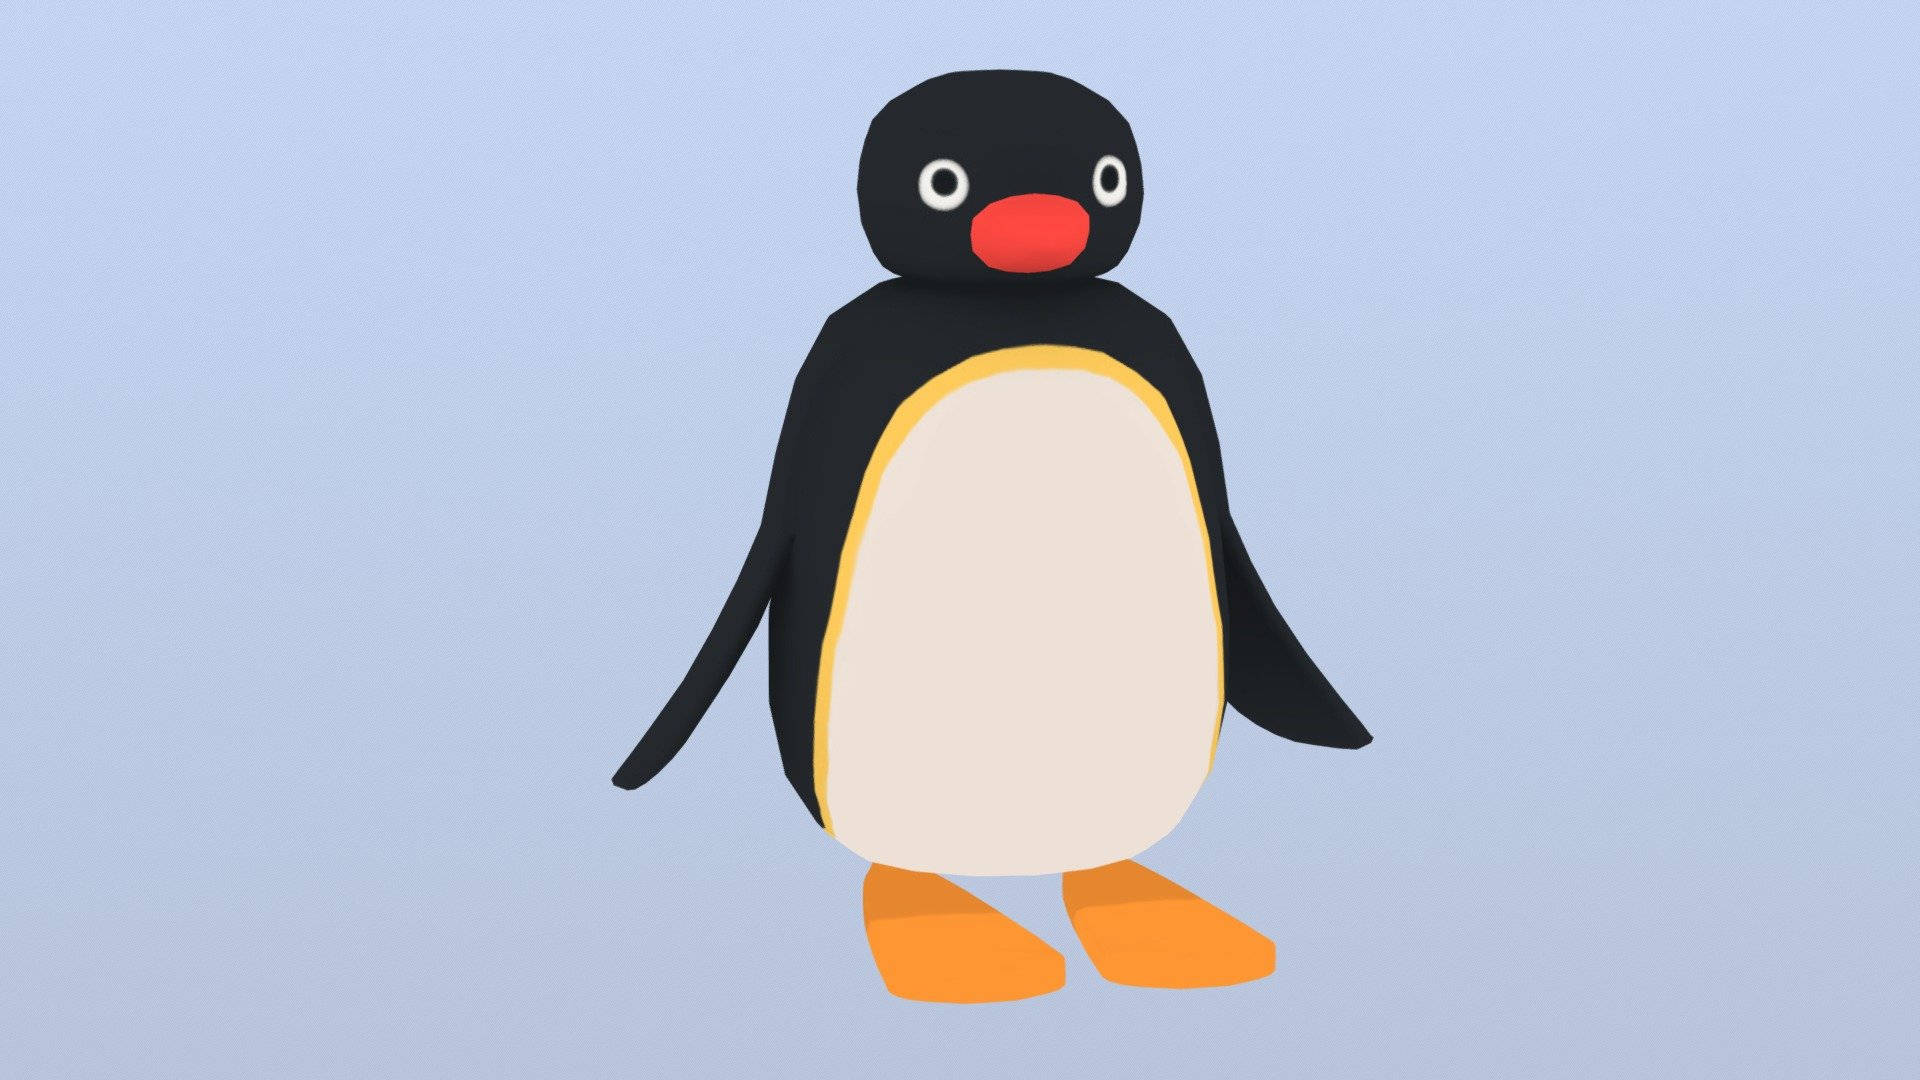 Pingu Simple Digital Art Wallpaper